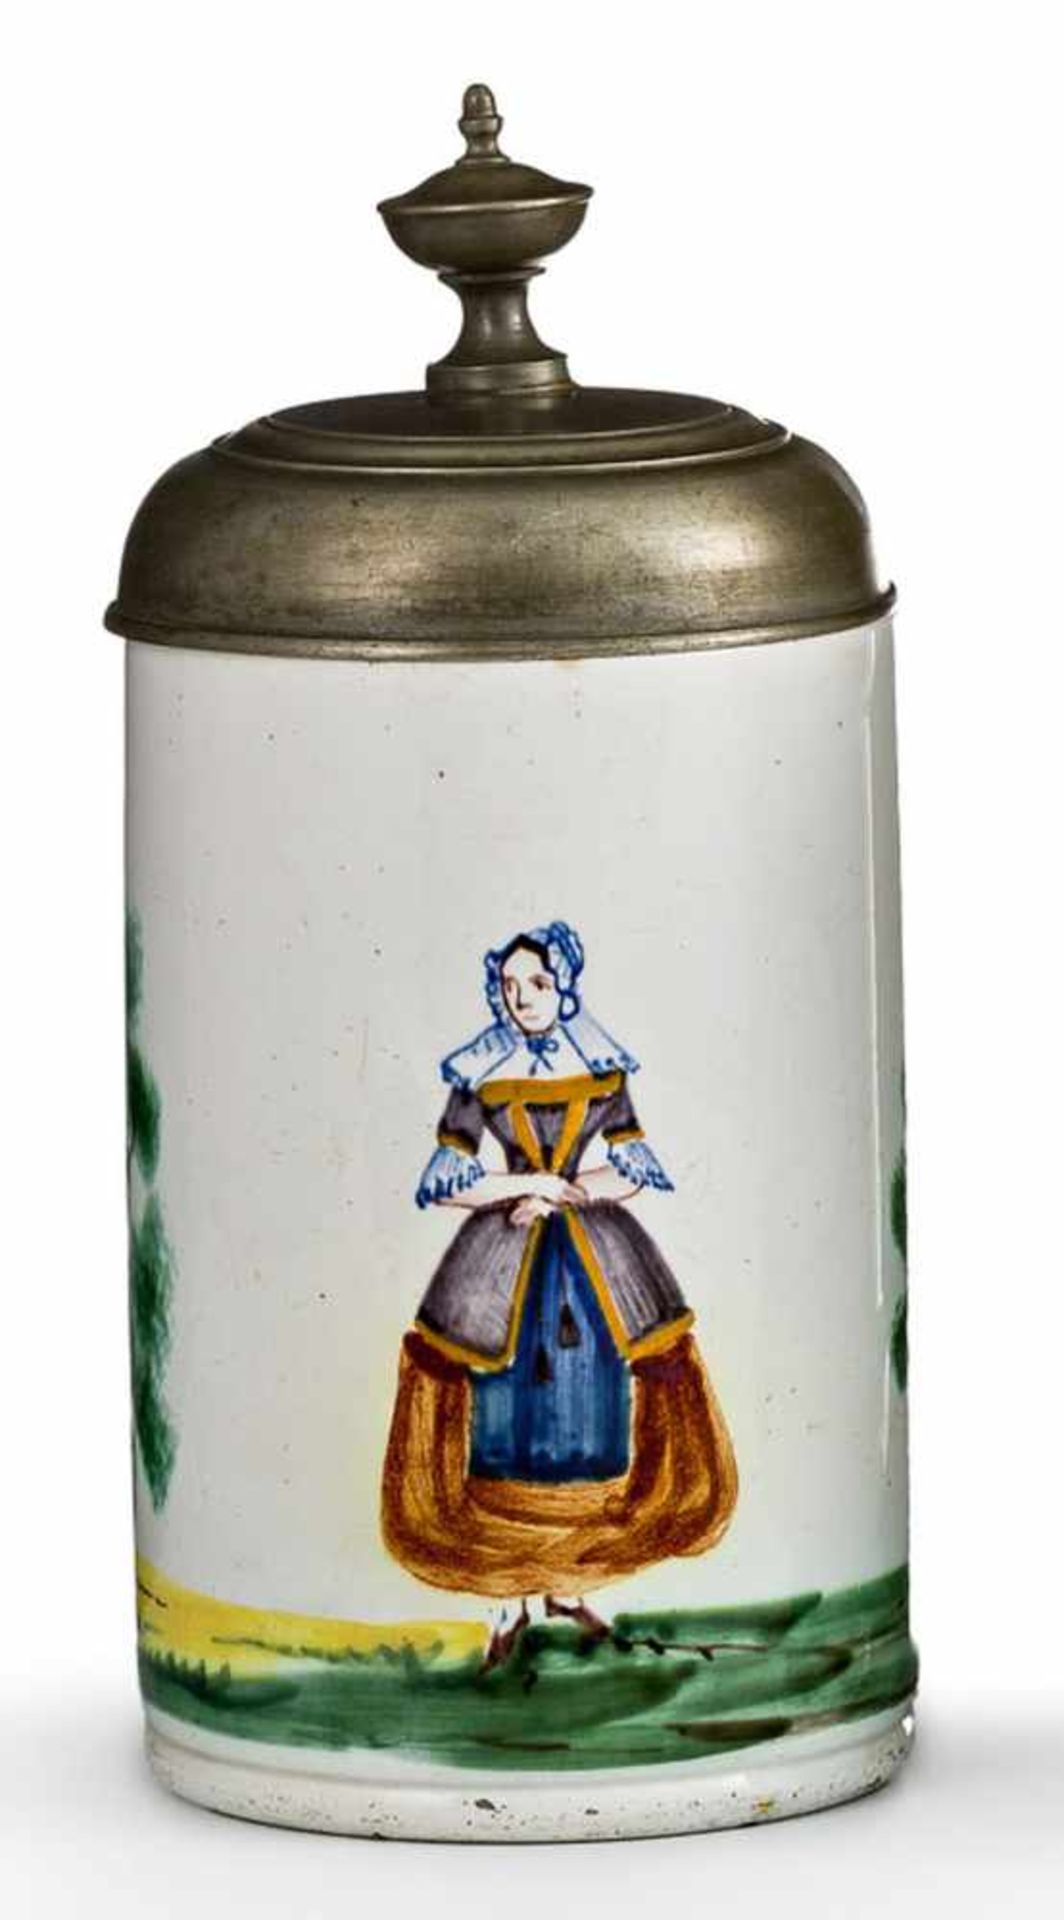 Humpen mit glattem ZinndeckelMagdeburg, um 1800Steingut. Zylindrisch. Bemalt in Grün, Gelb, Braun